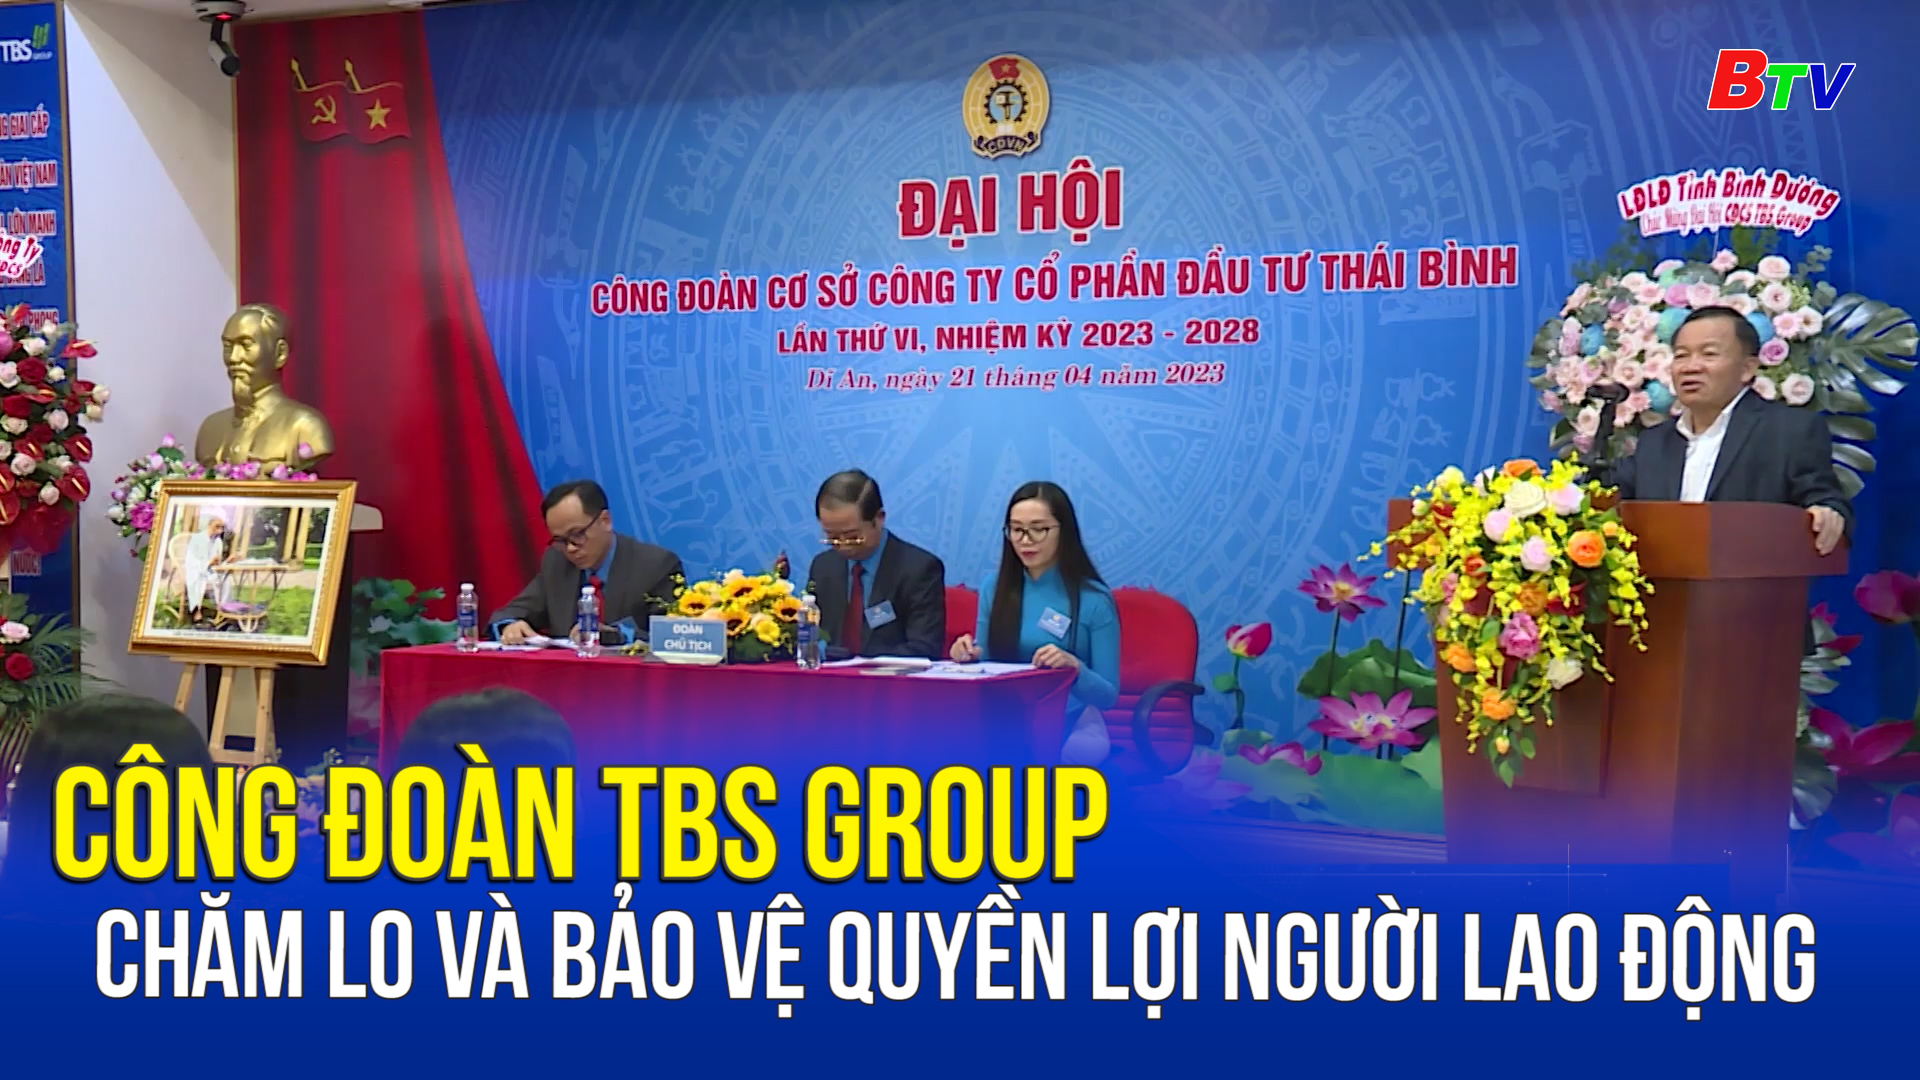 Công đoàn TBS GROUP chăm lo và bảo vệ quyền lợi người lao động